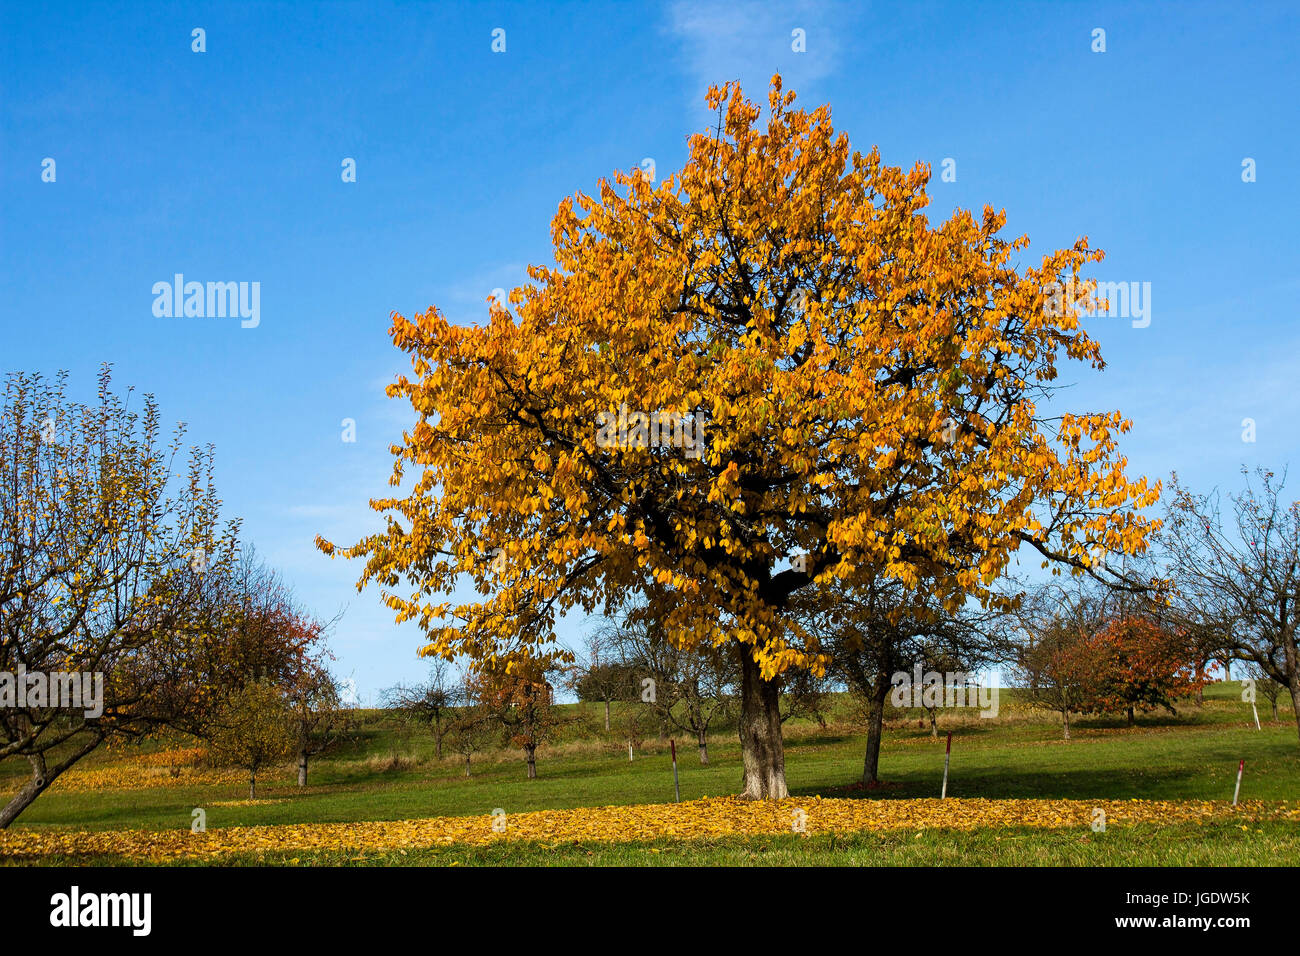 Cherry tree in autumn, Kirschbaum im Herbst Stock Photo